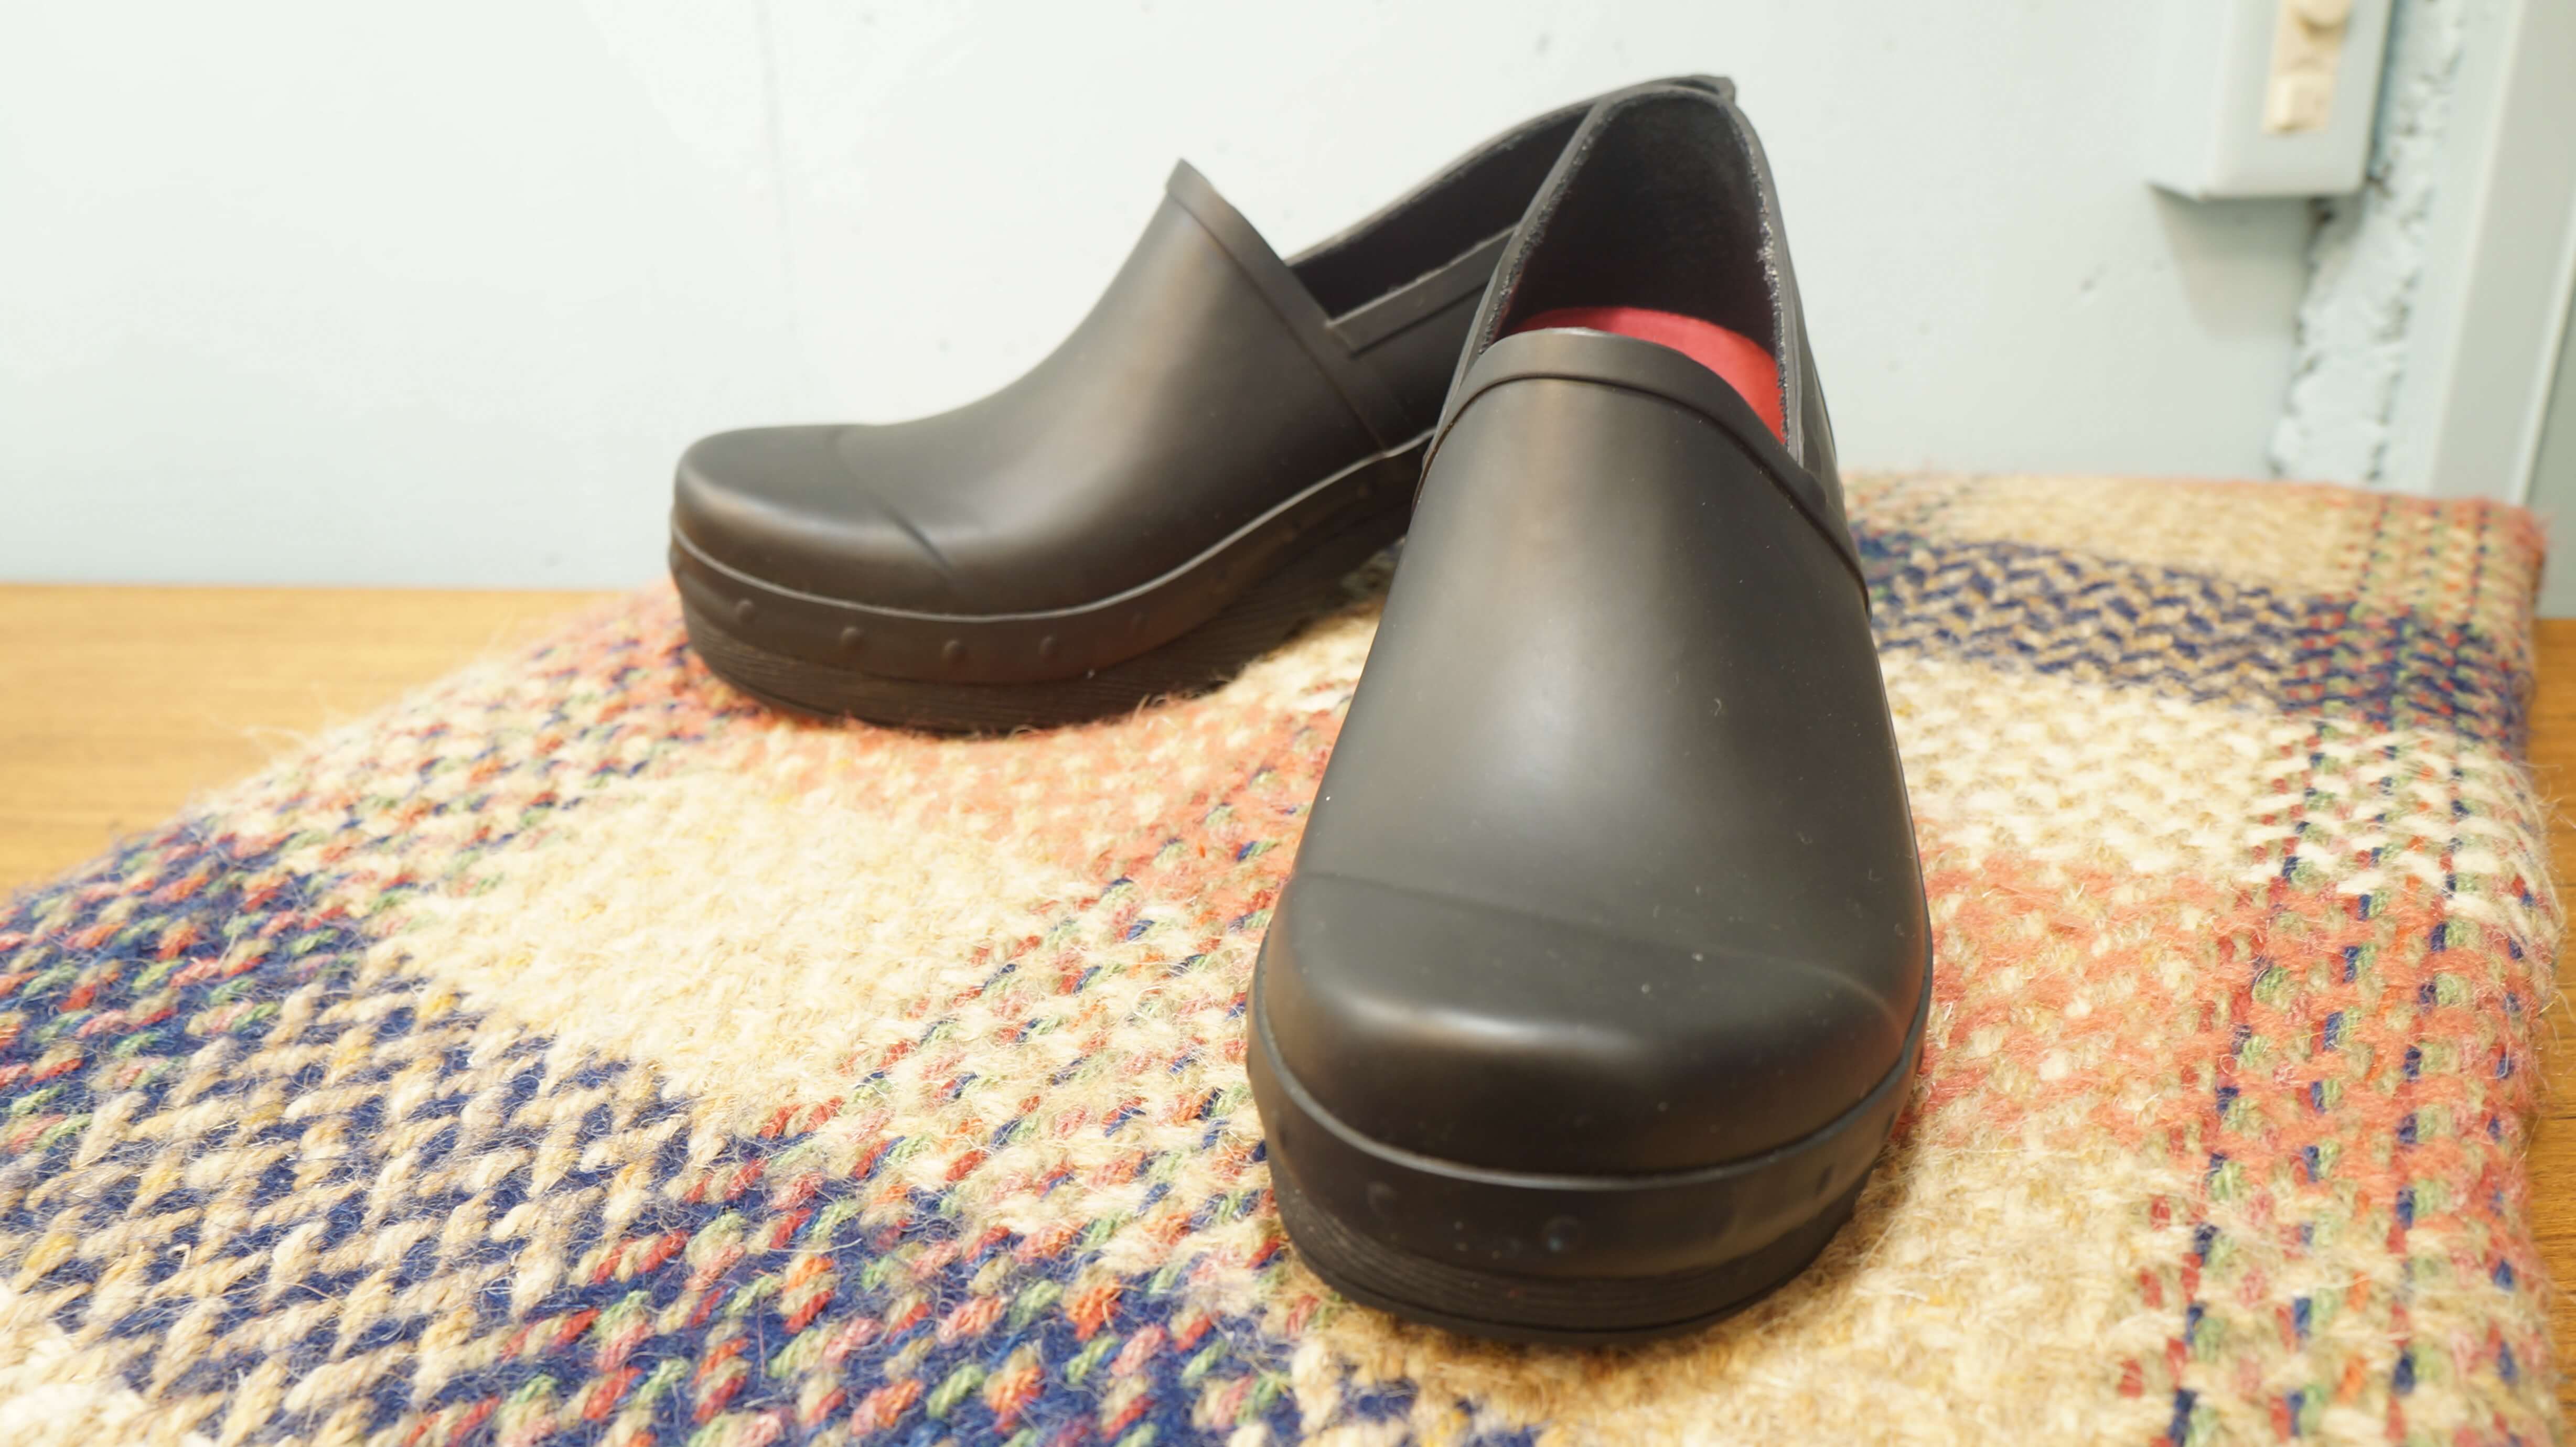 1990年にアメリカのペンシルバニア州で生まれた、 コンフォートシューズブランド「DANSKO/ダンスコ」。 創業者がデンマークの小さな靴屋でみつけたシンプルなデザインのクロッグスに惚れ込み、 アメリカで販売をしてみようと20年間、改良に取り組んだ後、Dansko, LLC. を設立しました。 「DANSKO」とは「デンマークの靴」という意味です。 丸みを帯びたフォルムが可愛いダンスコのシューズはおしゃれなだけでなく、 圧倒的な履きやすさと疲れにくいデザインで人気を集めています。 こちらは定番のクロッグシューズの形をそのままに、全面に防水加工が施されている レインブーツ"リチェル"。 一見レザーと見間違いそうですが、丈夫なバルカナイズ(加硫)製法の ウォータープルーフラバーを使用しています。 汚れがついても水洗いできるので、雨の日以外でもアウトドアなどにもおすすめです。 濡れてしまっても、インソールは取り外して乾かすことができます。 また、アッパーとソールのつなぎ目にはスタッズを、ソールには木目を再現するという おしゃれポイントも見逃せません。 丸みのあるつま先がチャームポイントのダンスコのシューズは 程よいホールド感と厚めのソールで、足に負担がかかりにくく、 安定性のある履き心地です。 また、ソールに使用されているモールドラバーは、衝撃を吸収し、 弾力性、 耐摩耗性にも優れています。 憂鬱な雨の日にも、ダンスコのレインシューズがあればちょっぴり楽しい気分になるかも。 雨でもおしゃれを楽しみませんか♪ ～【東京都杉並区阿佐ヶ谷北アンティークショップ 古一/ZACK高円寺店】　古一/ふるいちでは出張無料買取も行っております。杉並区周辺はもちろん、世田谷区・目黒区・武蔵野市・新宿区等の東京近郊のお見積もりも！ビンテージ家具・インテリア雑貨・ランプ・USED品・ リサイクルなら古一/フルイチへ～